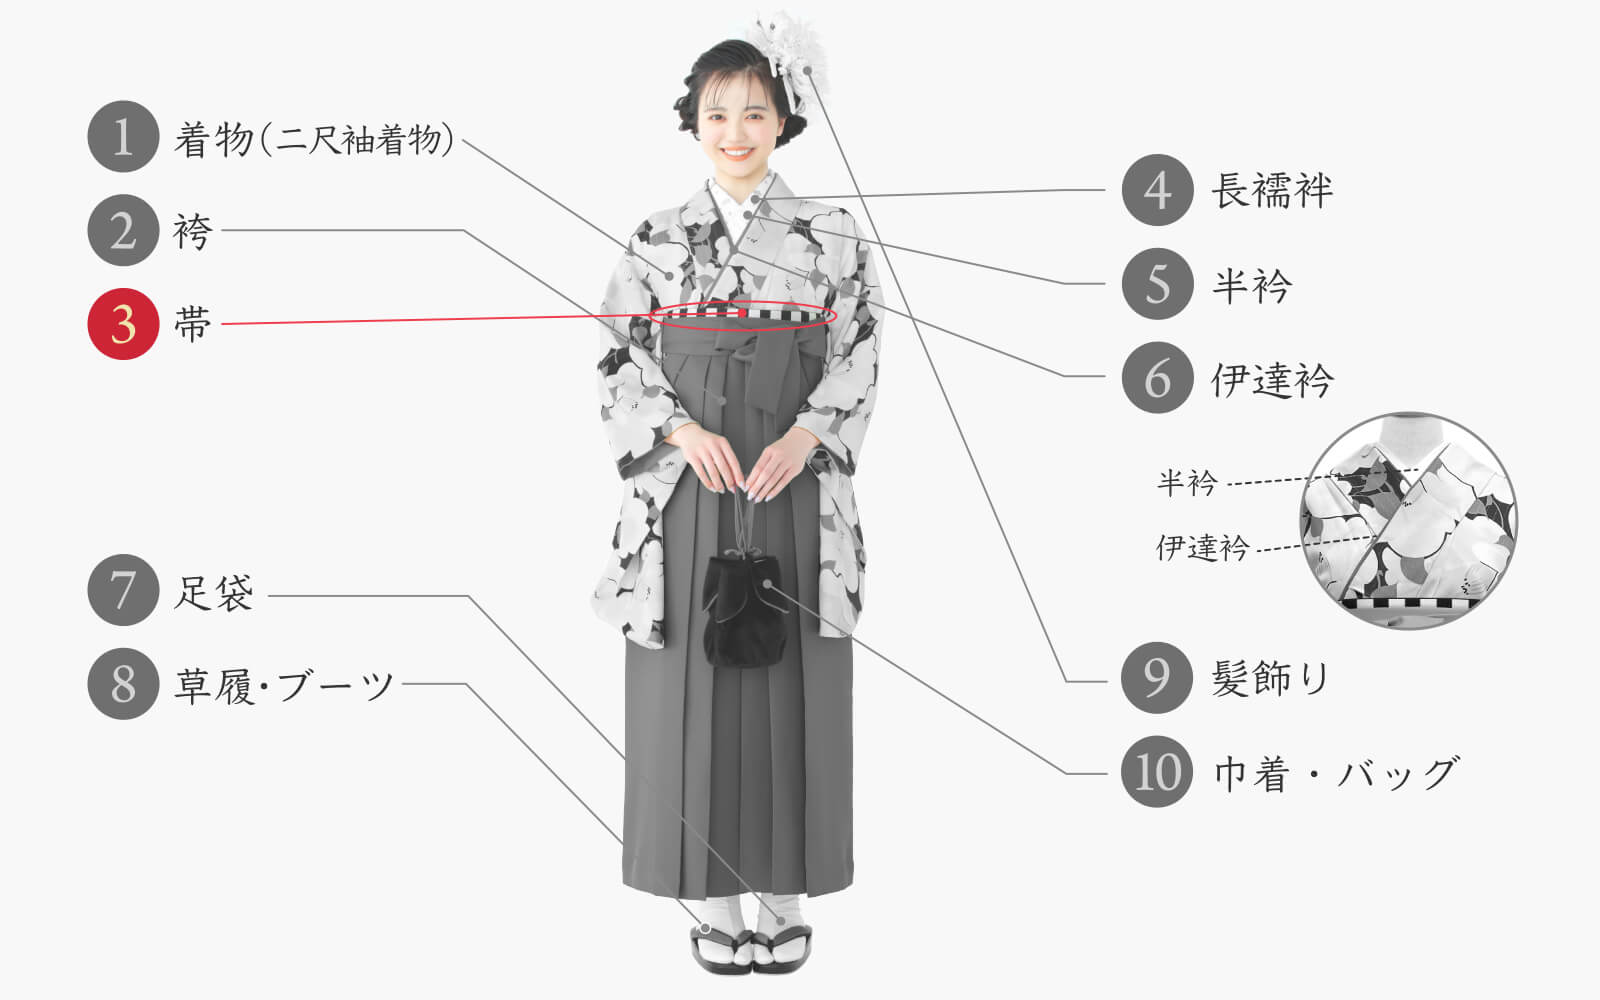 注意点振袖(正絹) 長襦袢、帯(正絹)、袴、帯揚げ、帯締めのセット